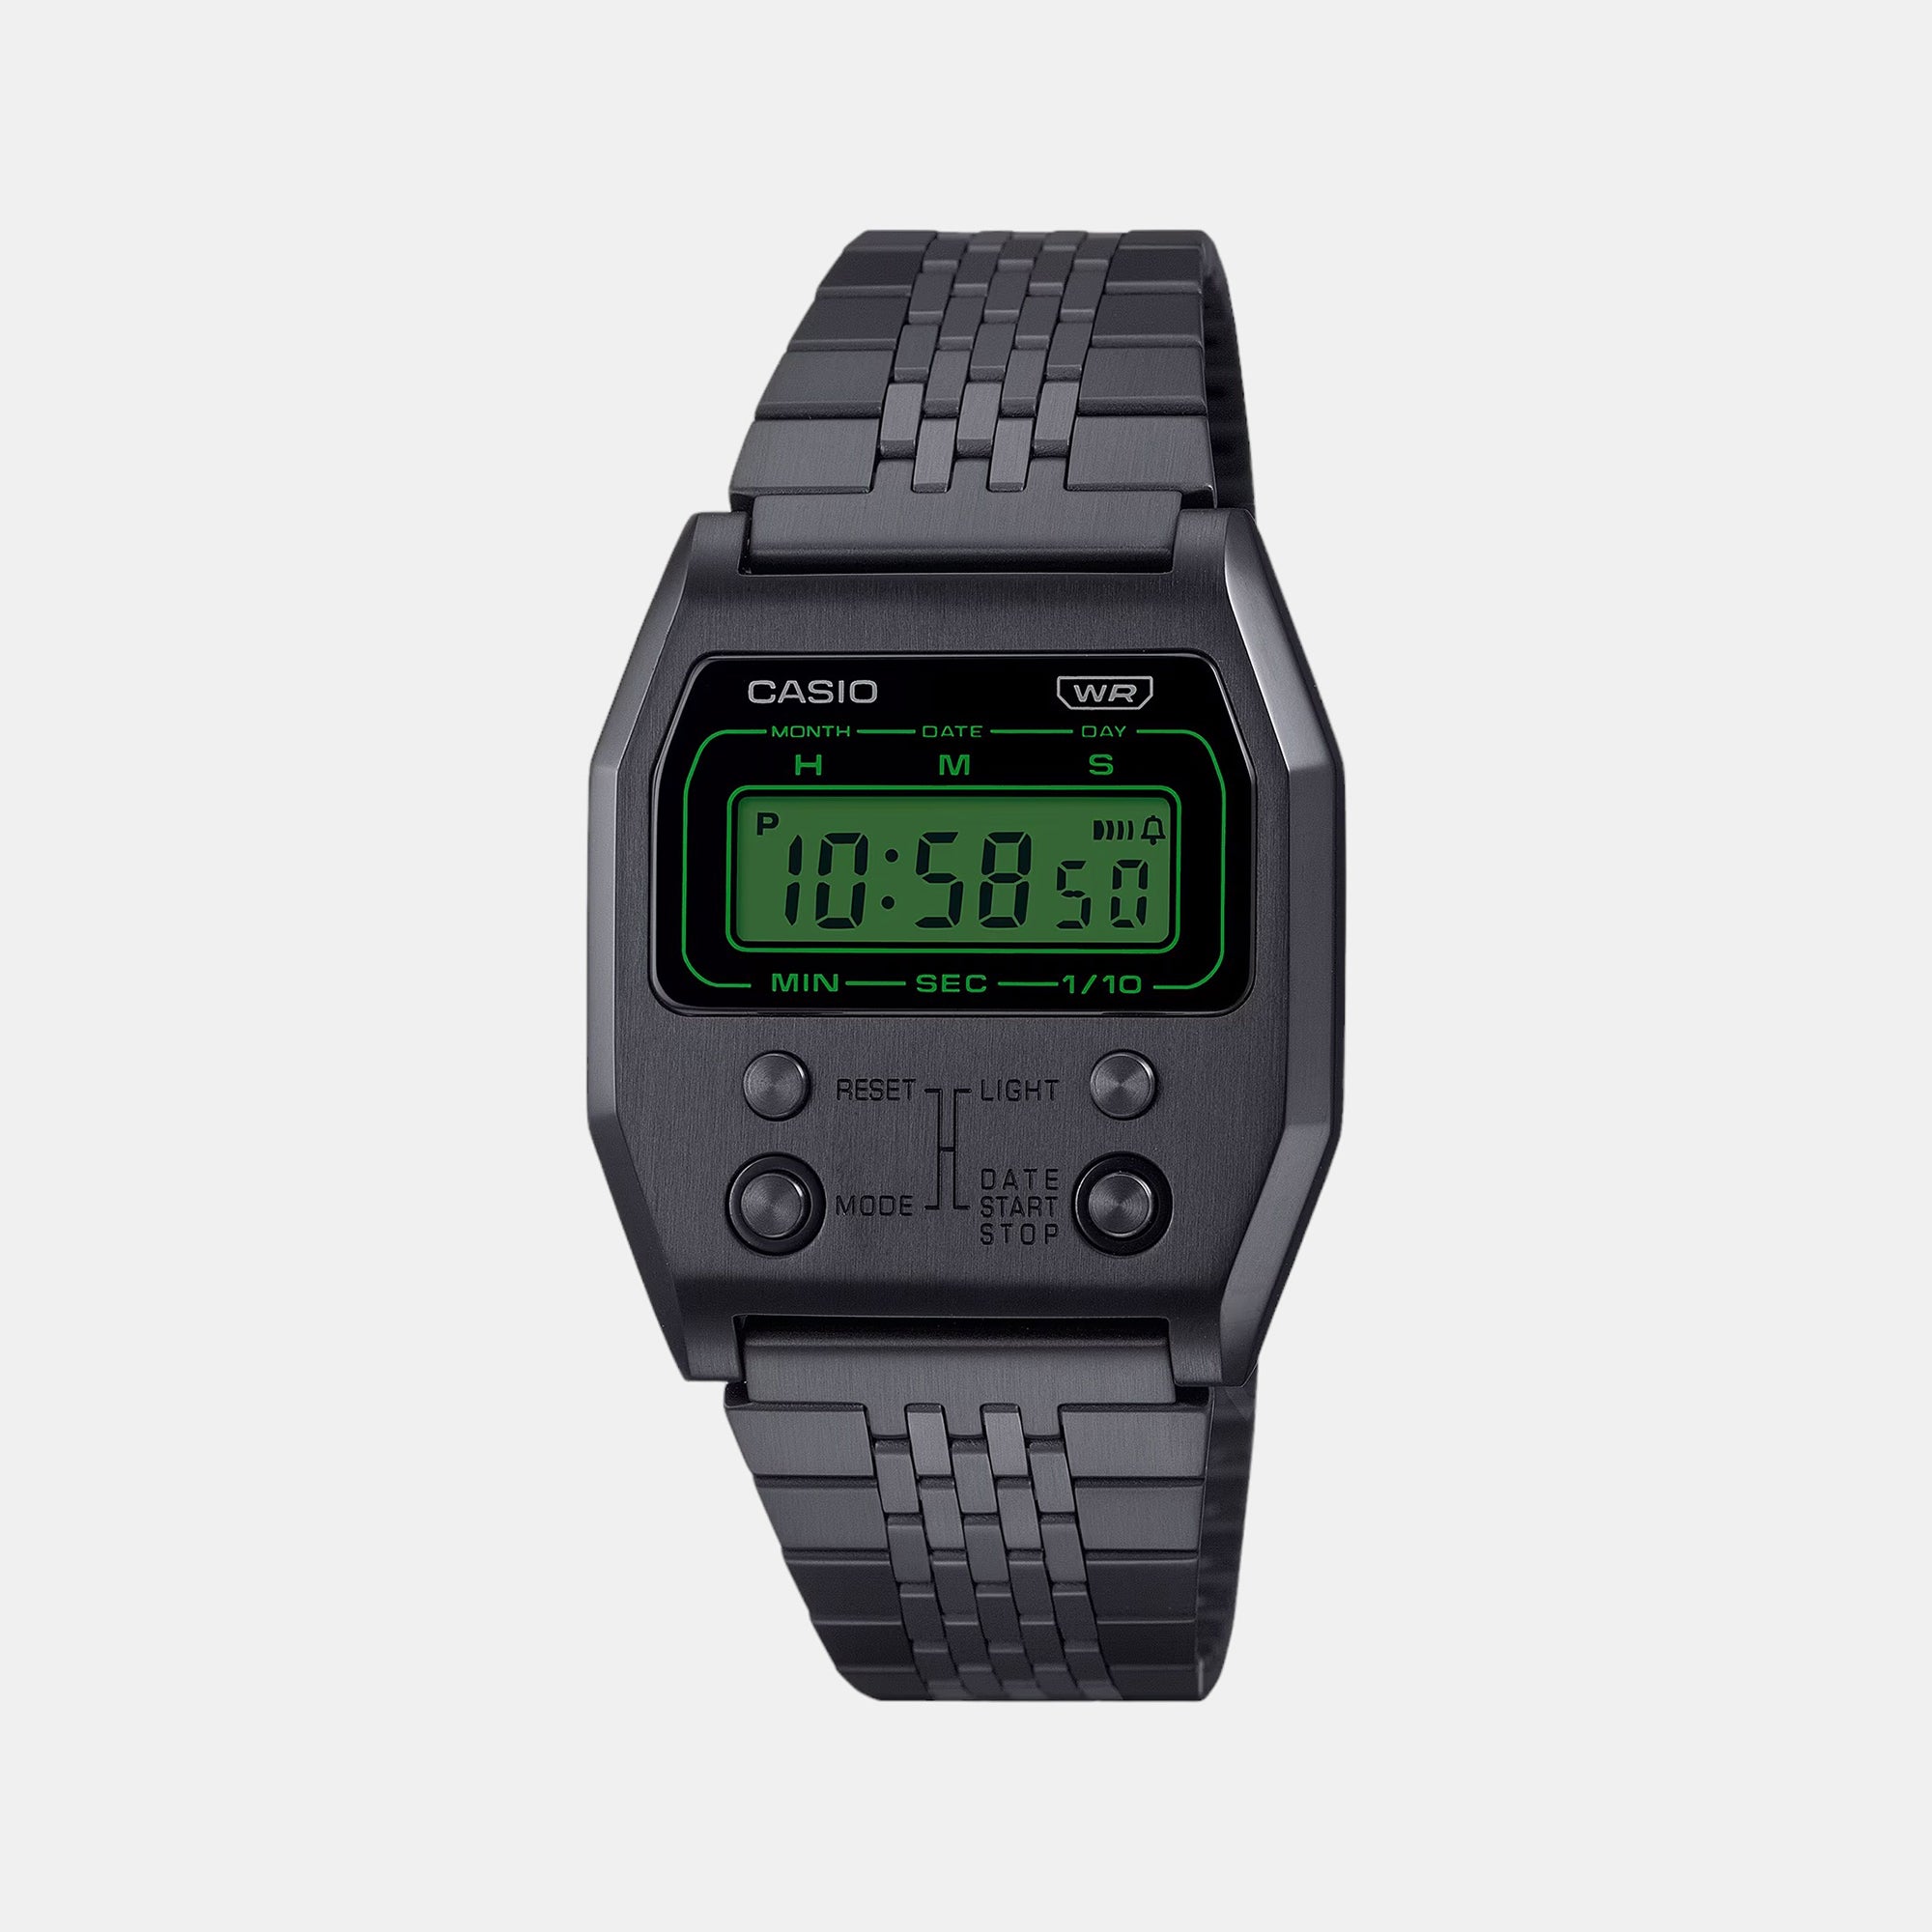 Buy Watches Online NZ Watches | Casio, Seiko, Citizen, Women's & Men's  Watches